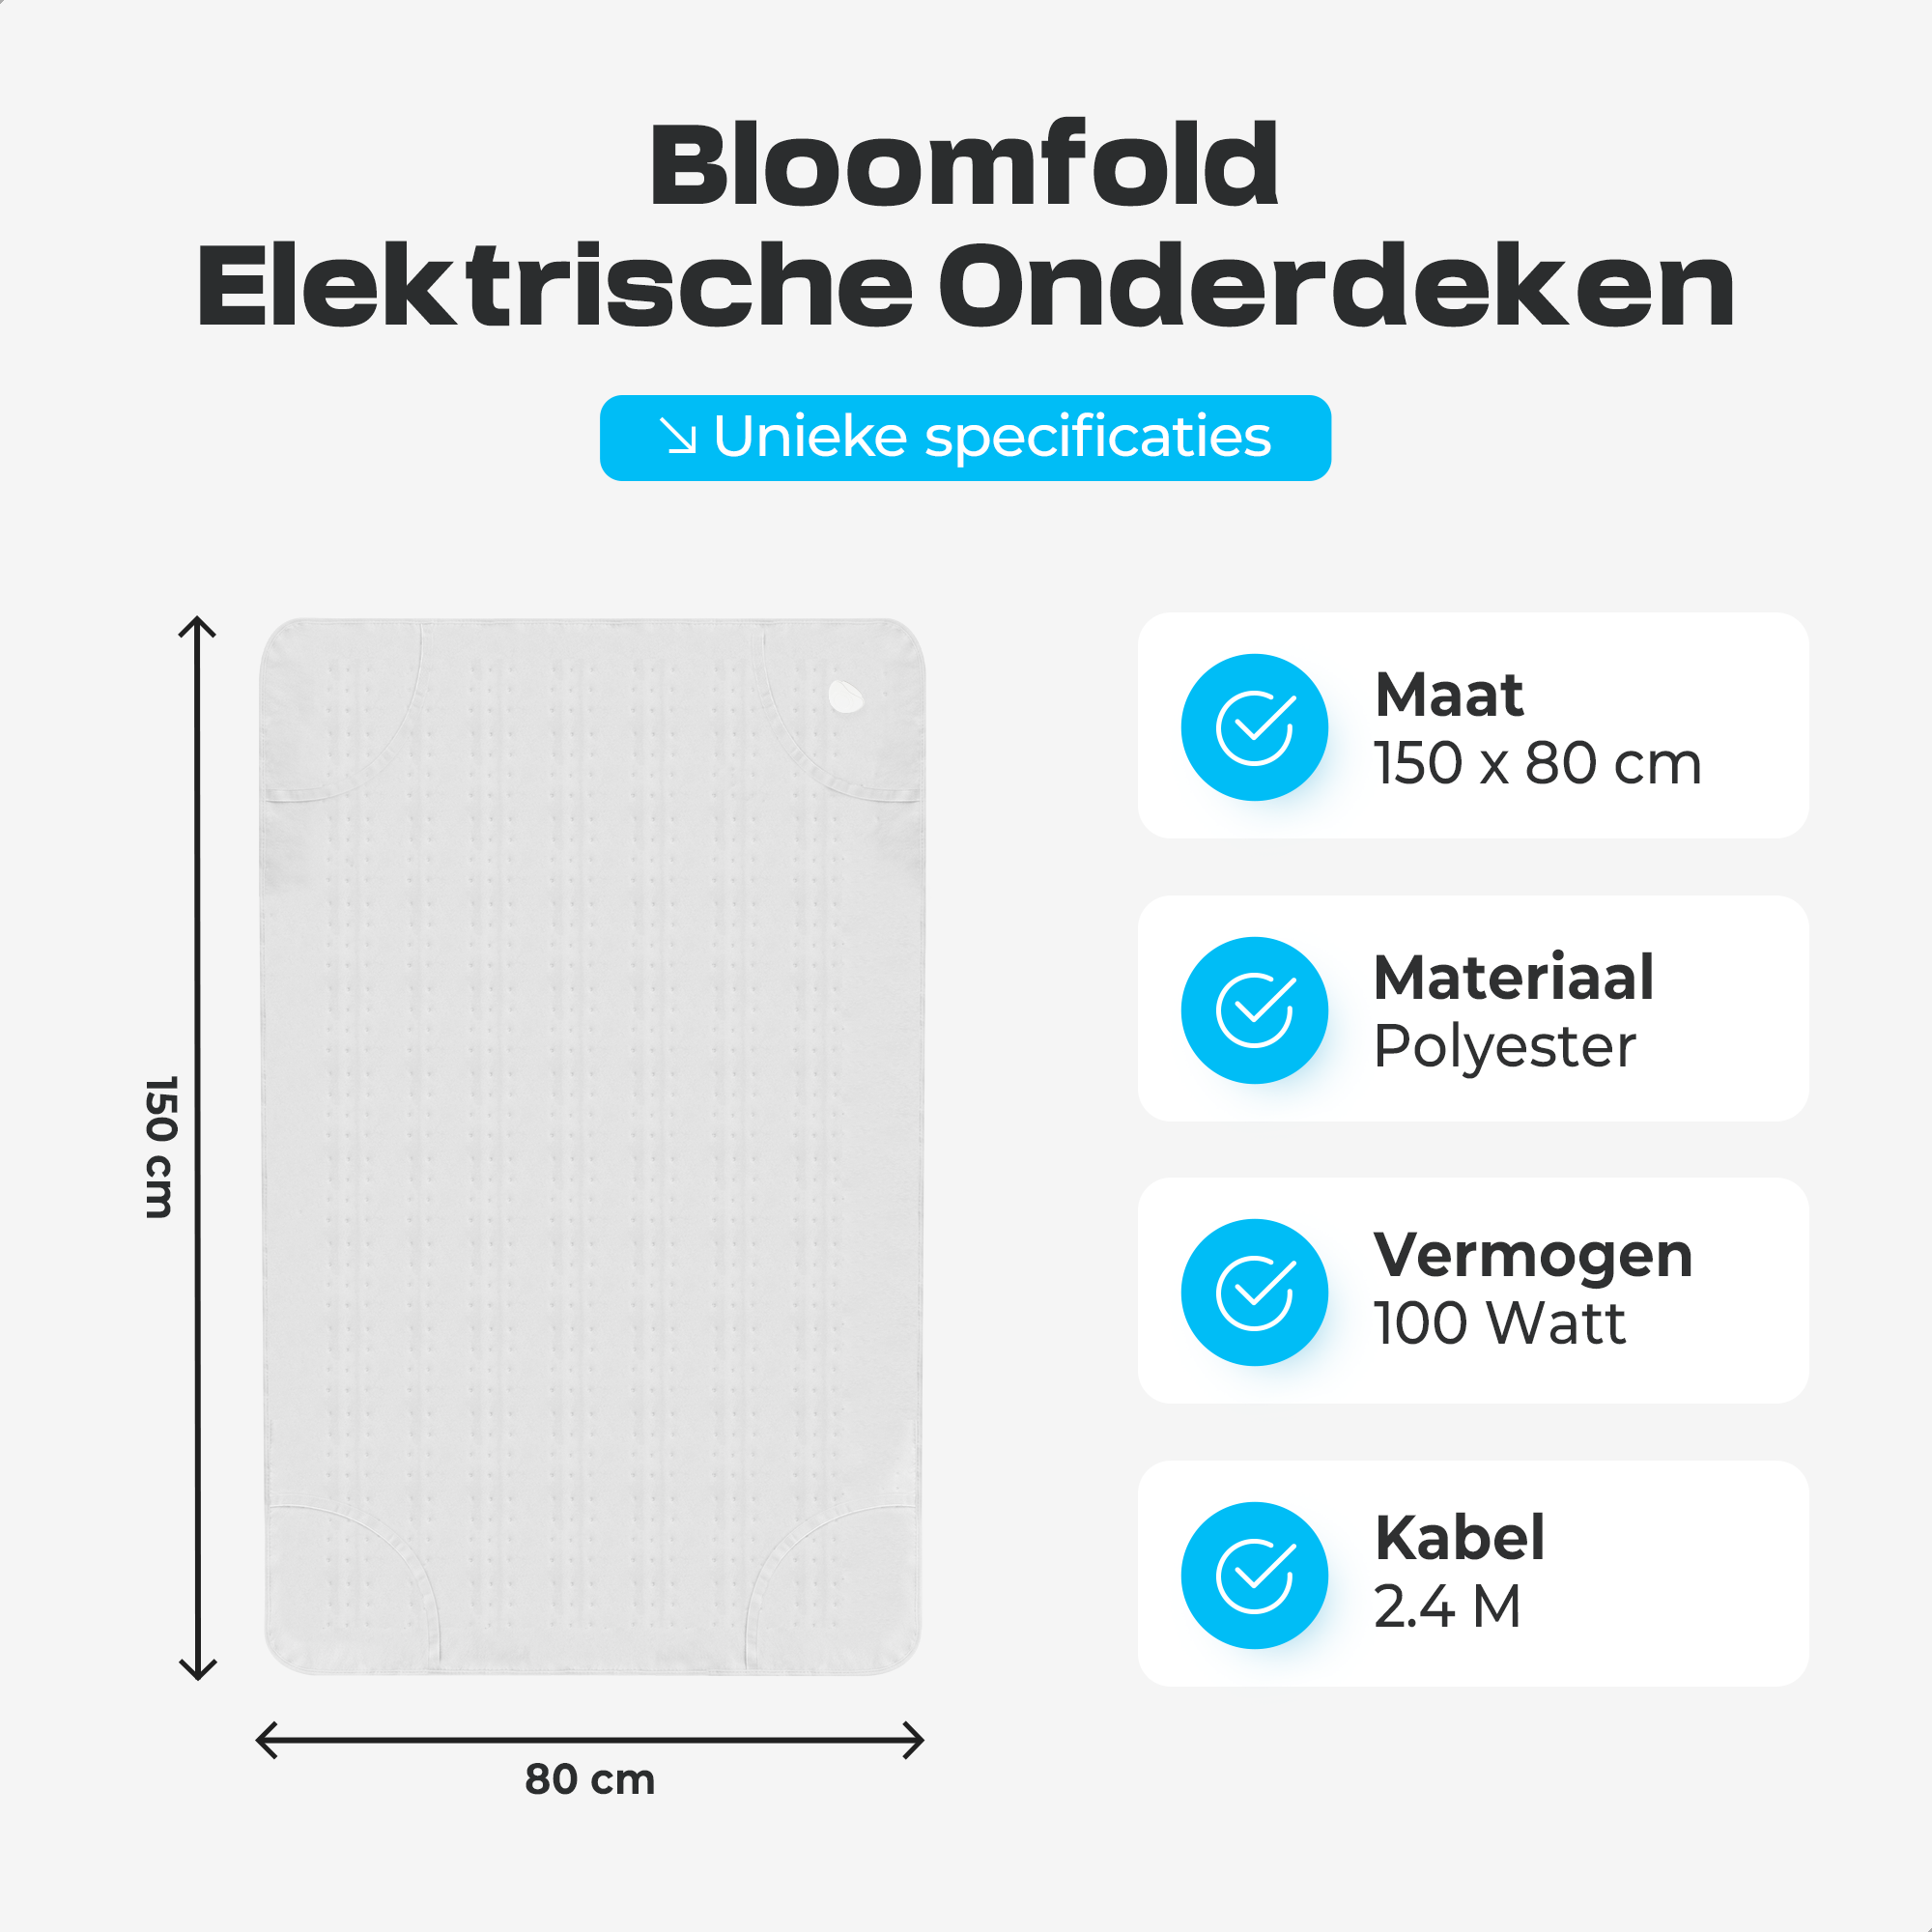 Bloomfold Elektrische Onderdeken - 150 x 80 cm